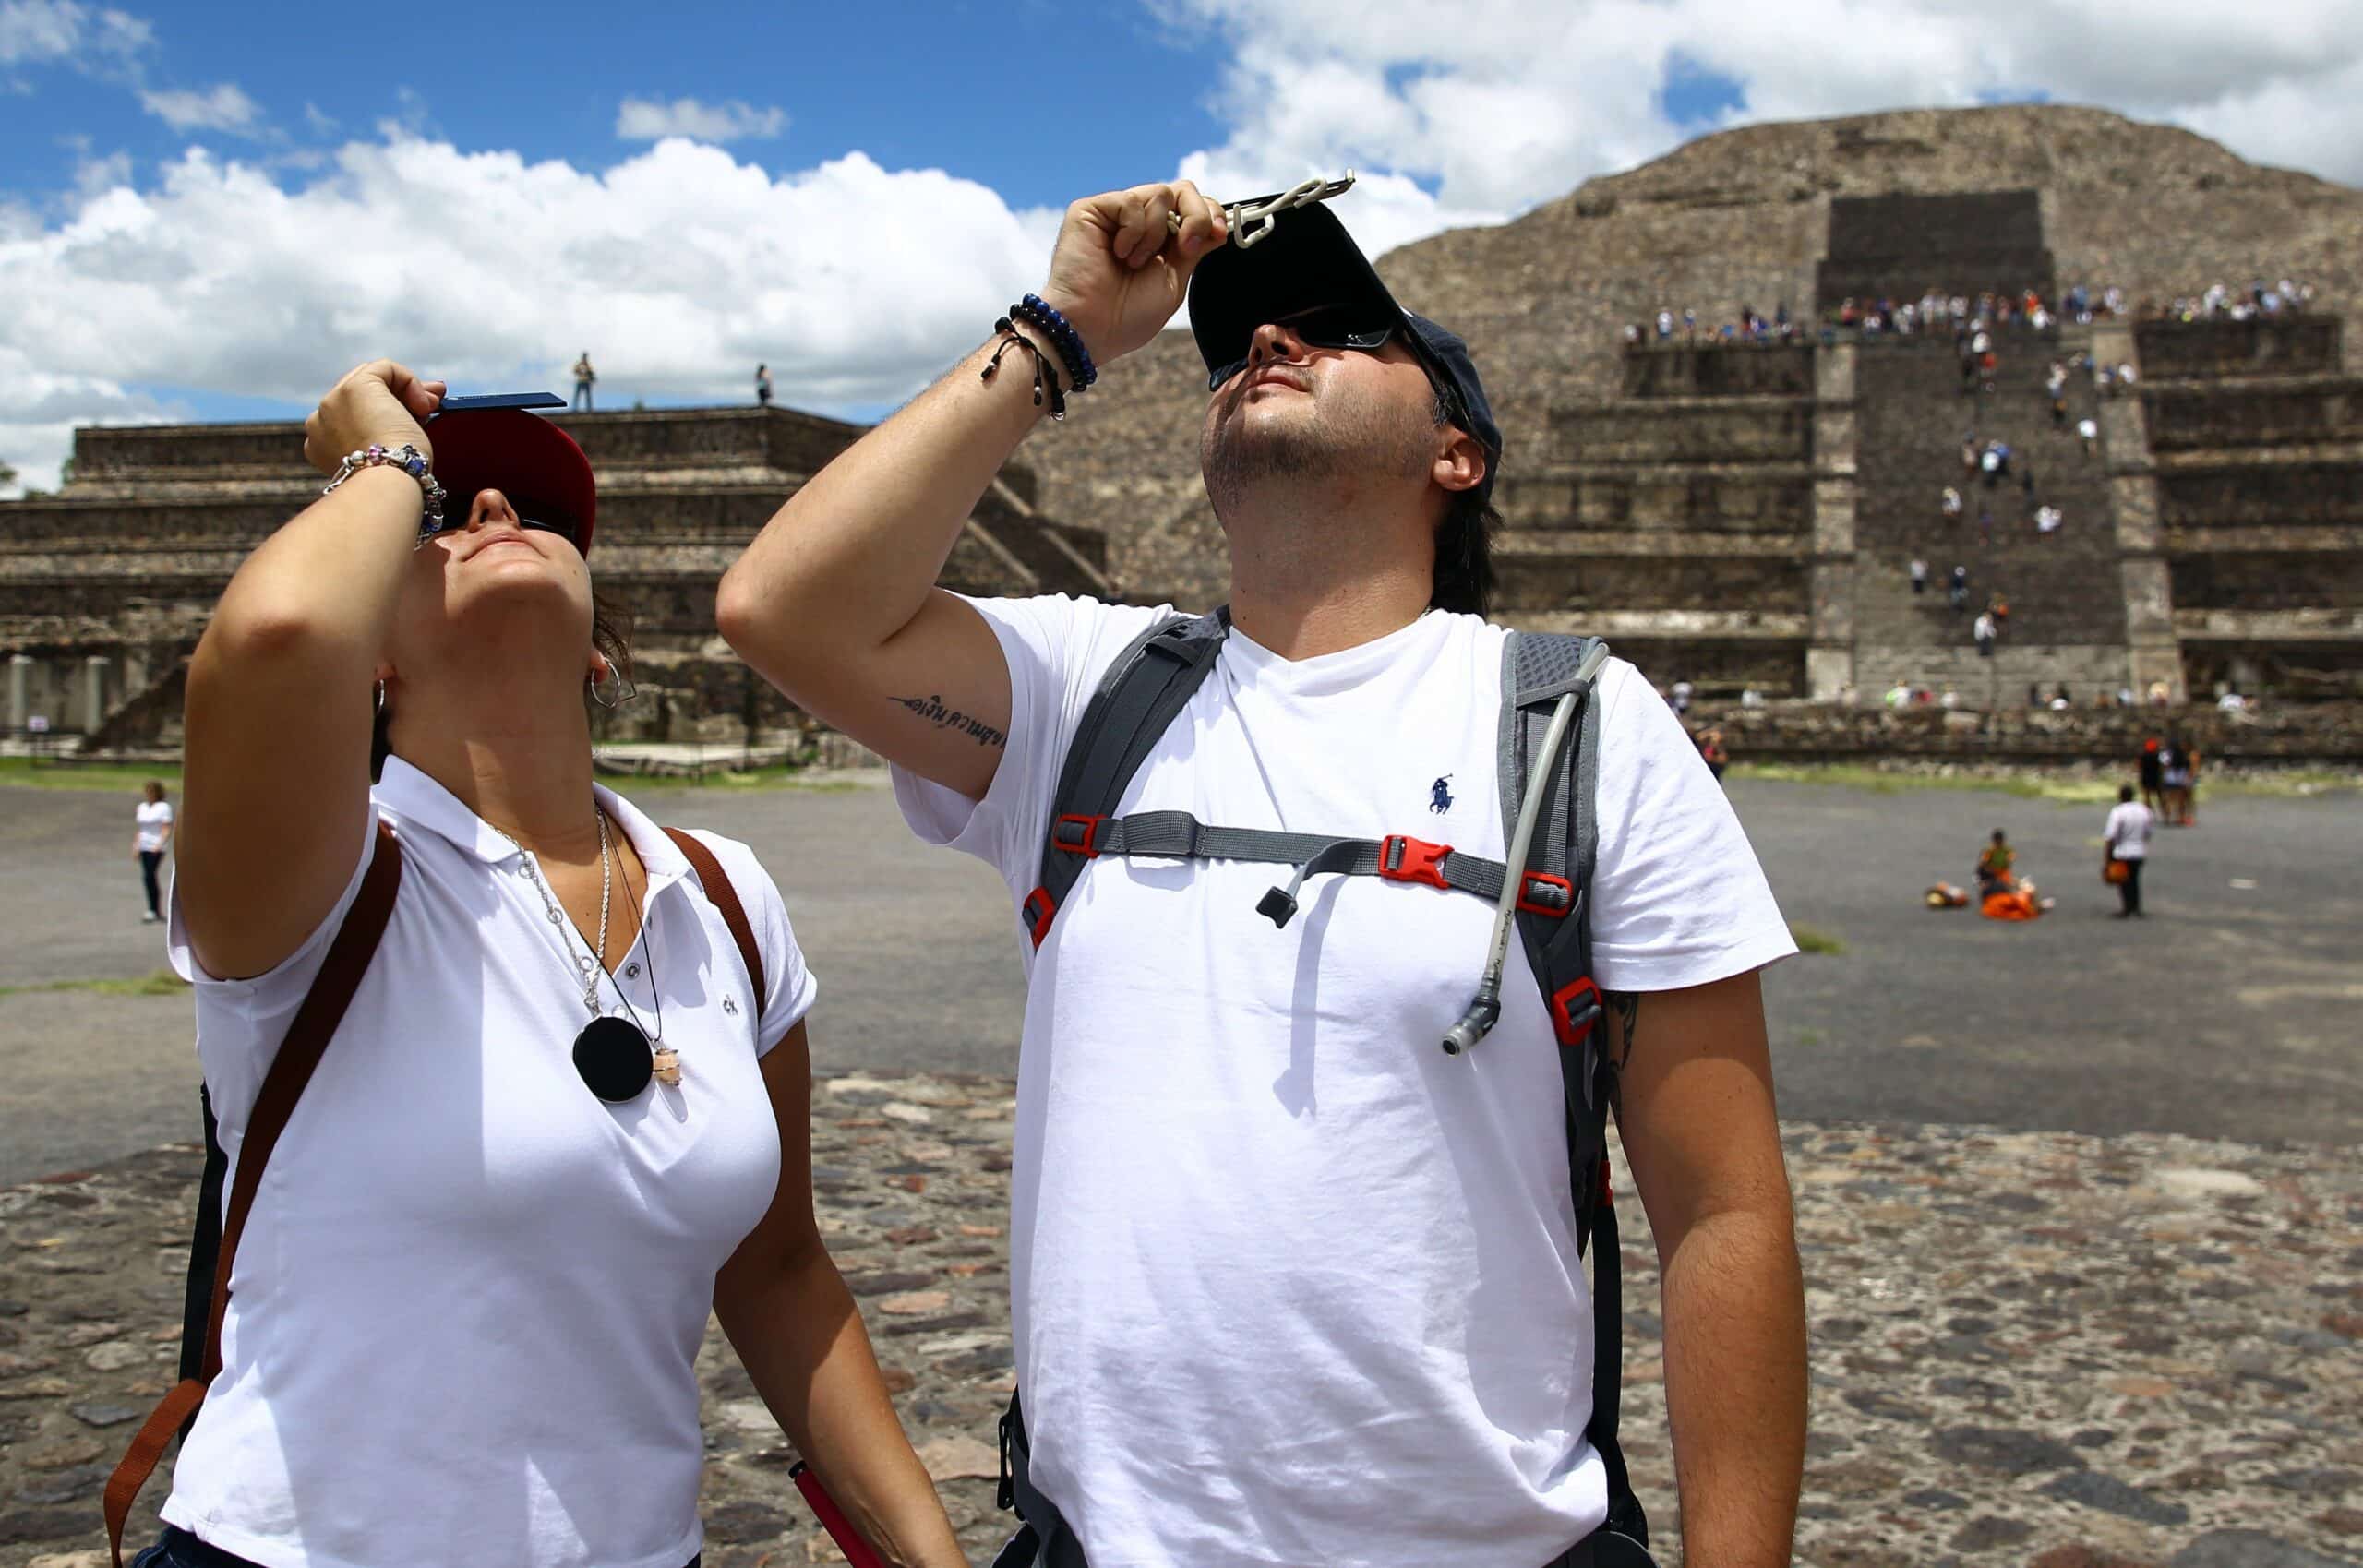 Eclipse solar en Teotihuacan: actividades, precios y más